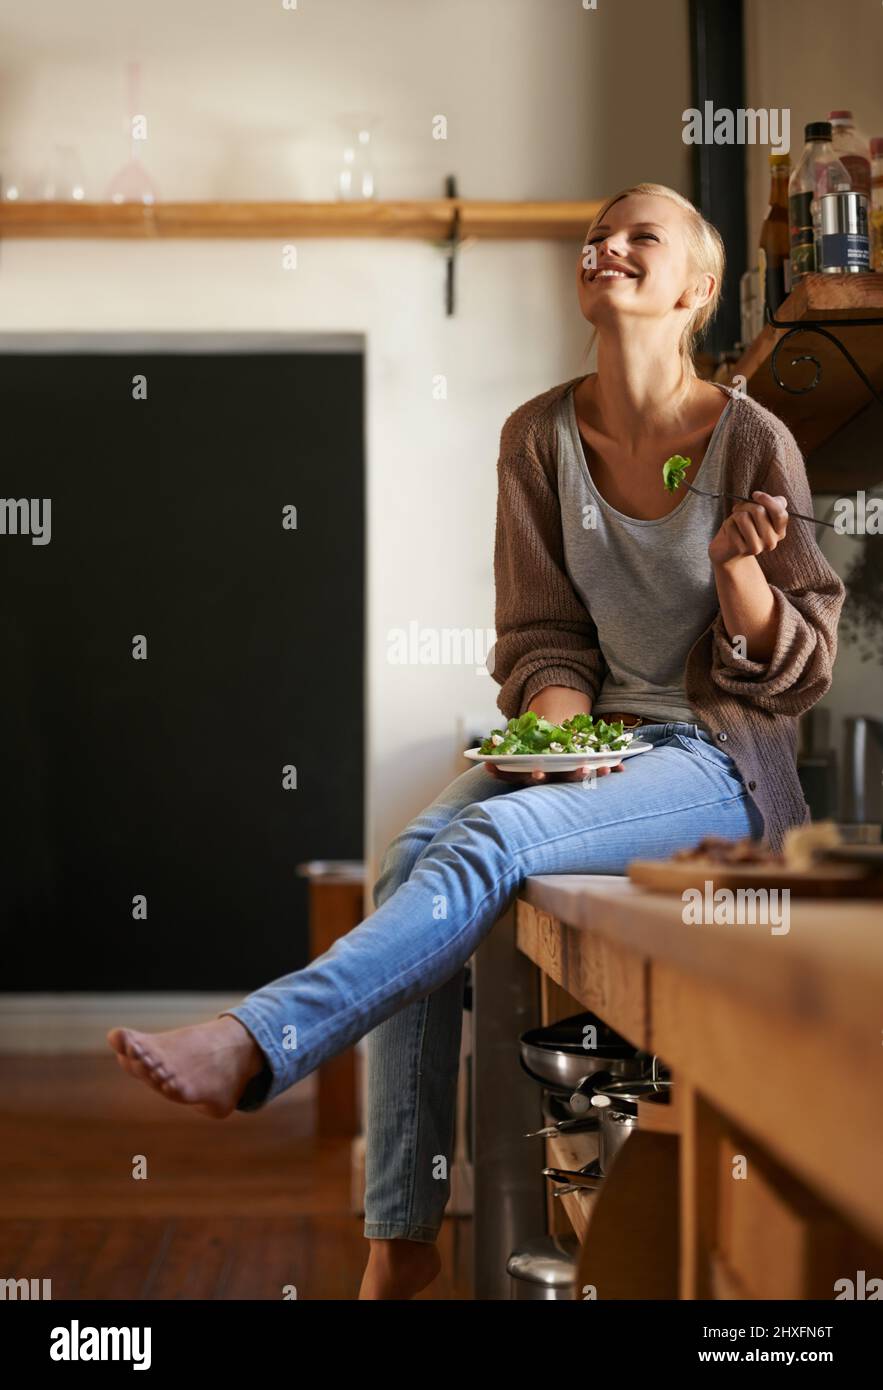 Shes aimant son nouveau régime. Photo d'une jeune femme attirante assise sur son comptoir de cuisine en riant tout en mangeant une salade. Banque D'Images